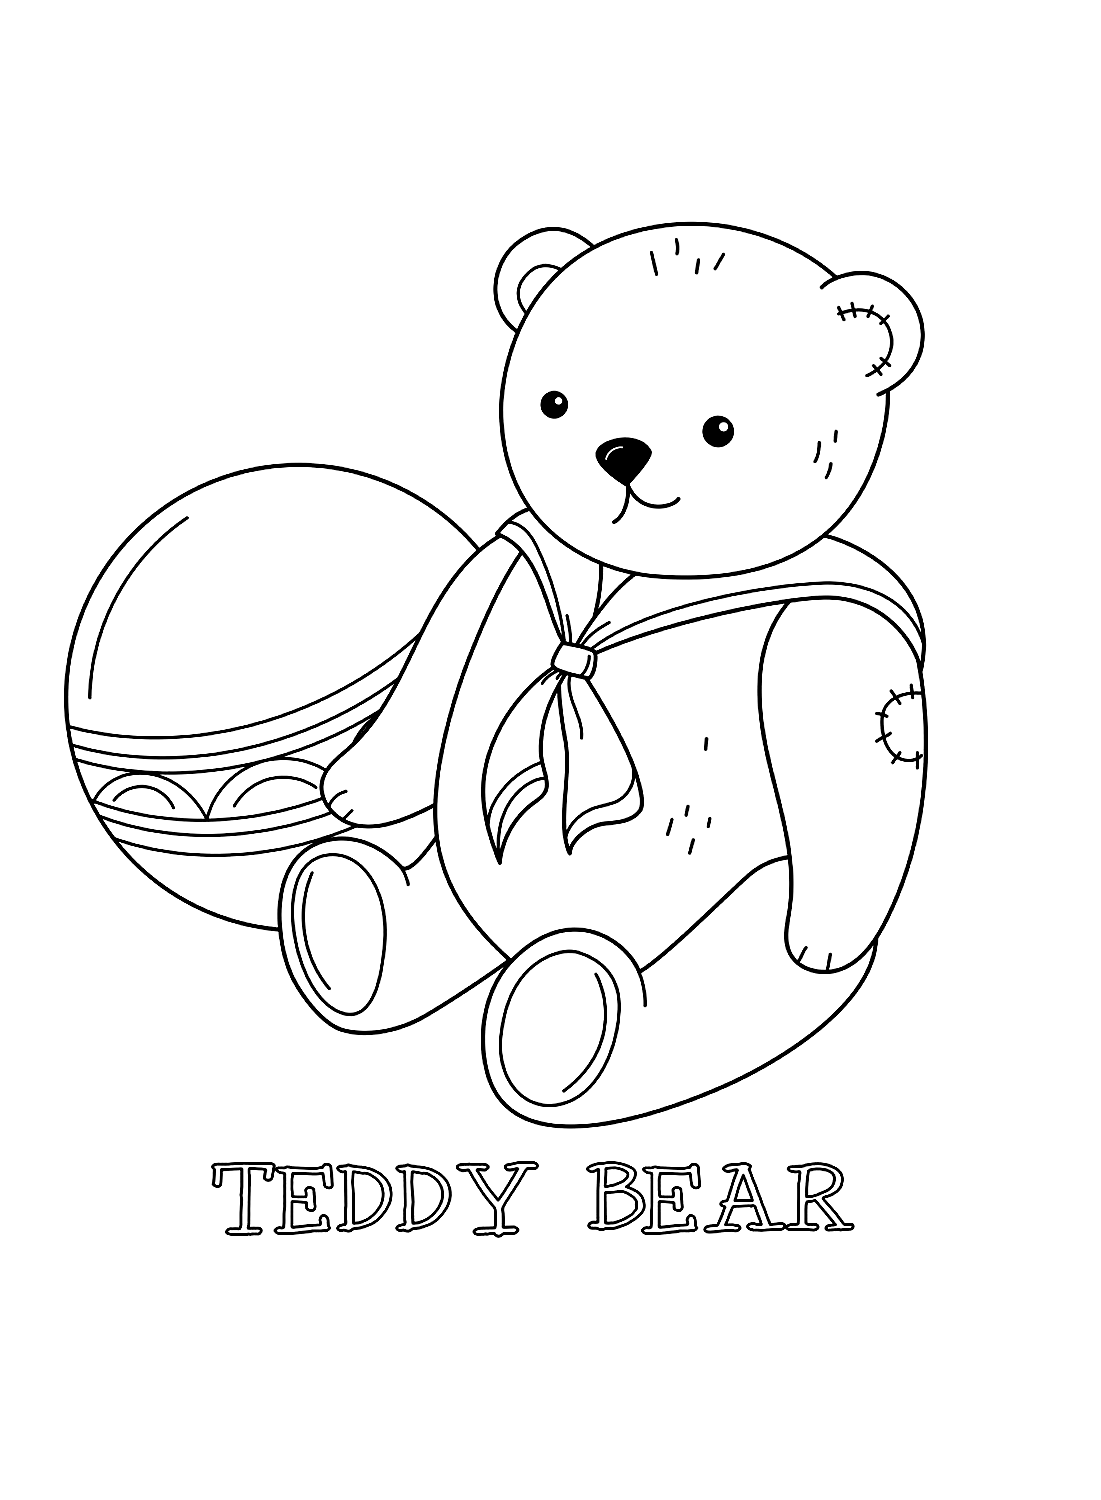 Ball en teddybeer kleurplaten van Teddy Bear